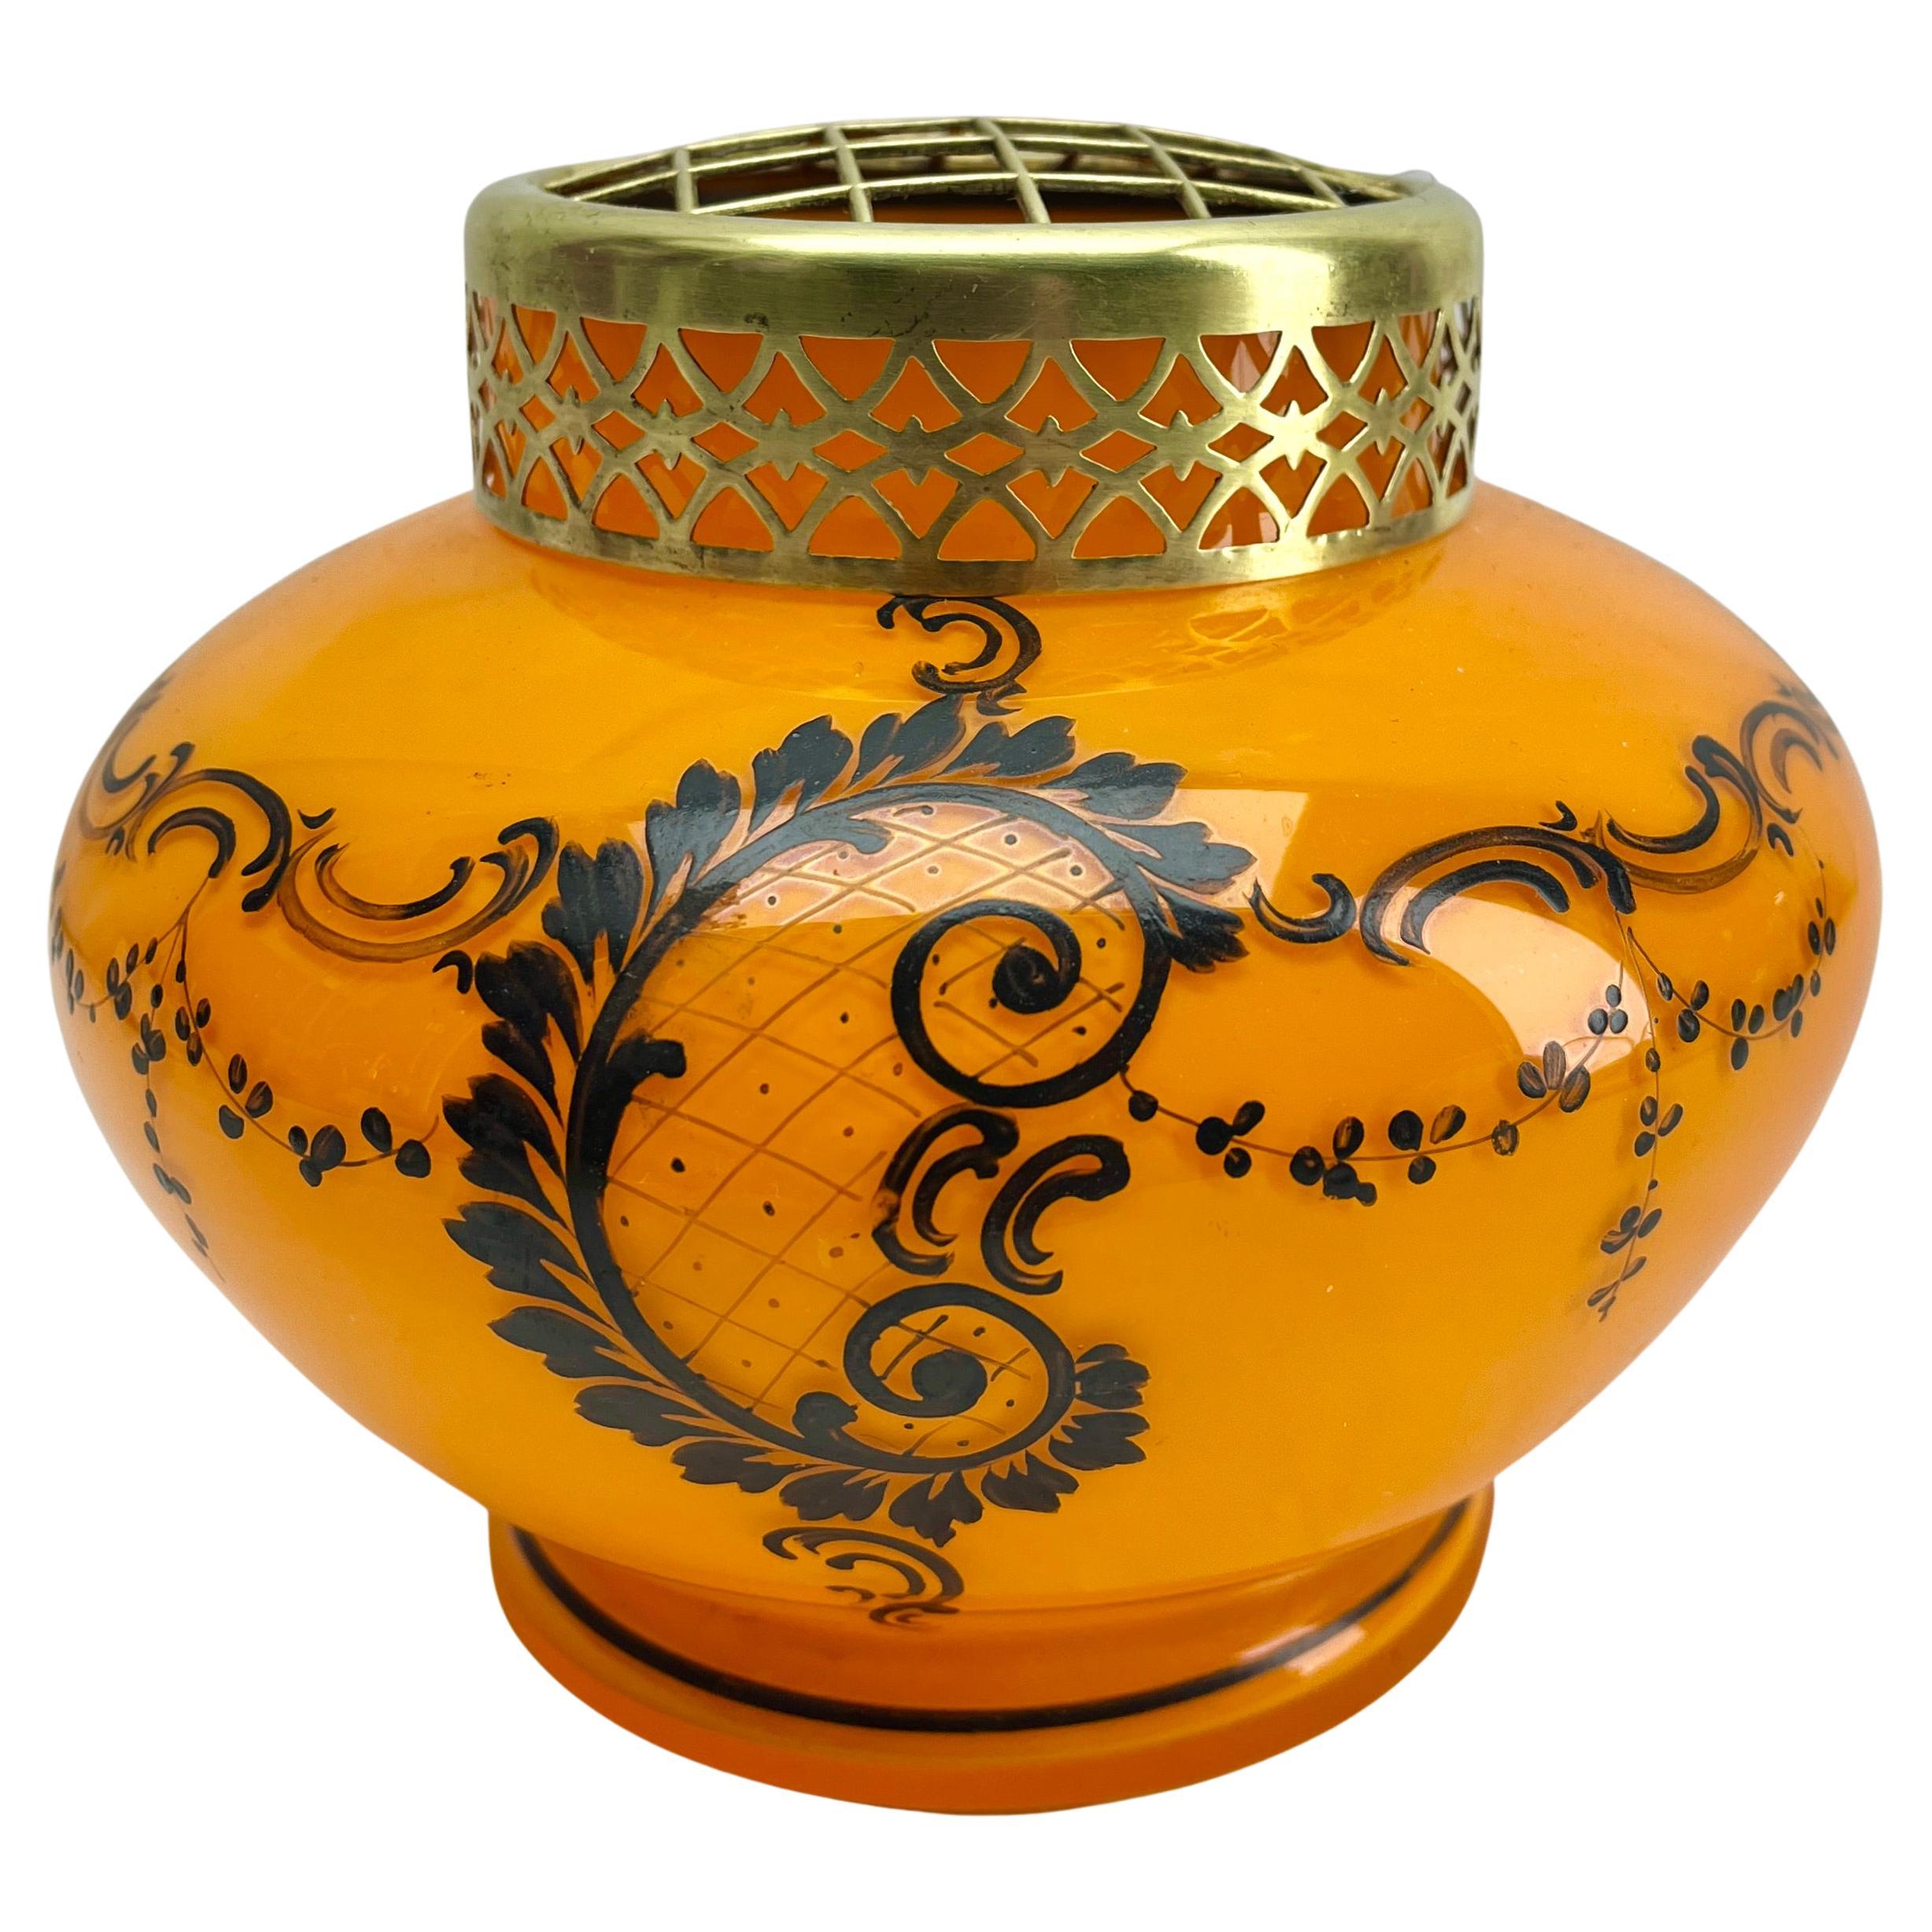 Art Nouveau Hand Painted glass Pique Fleurs' vase by Kralik' with Grille